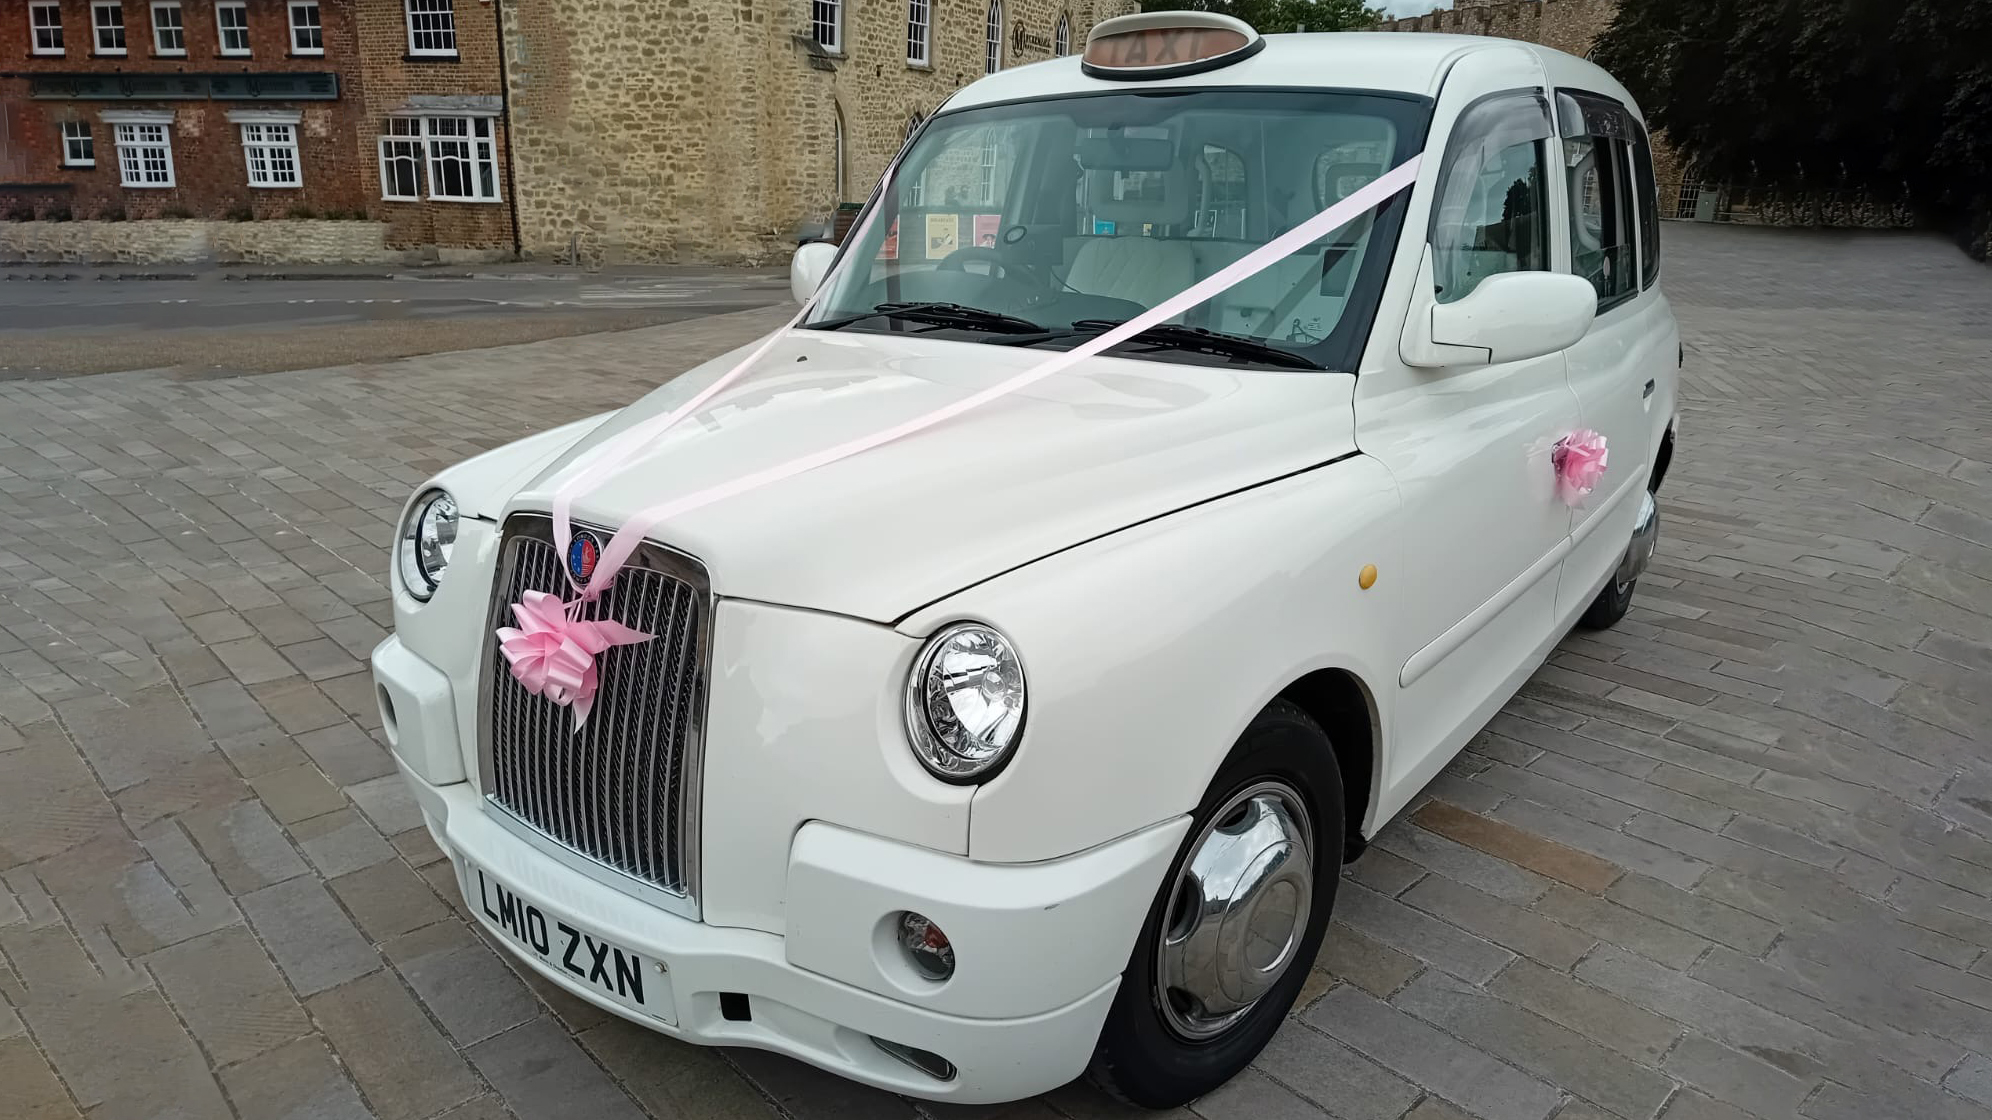 Taxi Cab wedding car for hire in Bideford, Devon